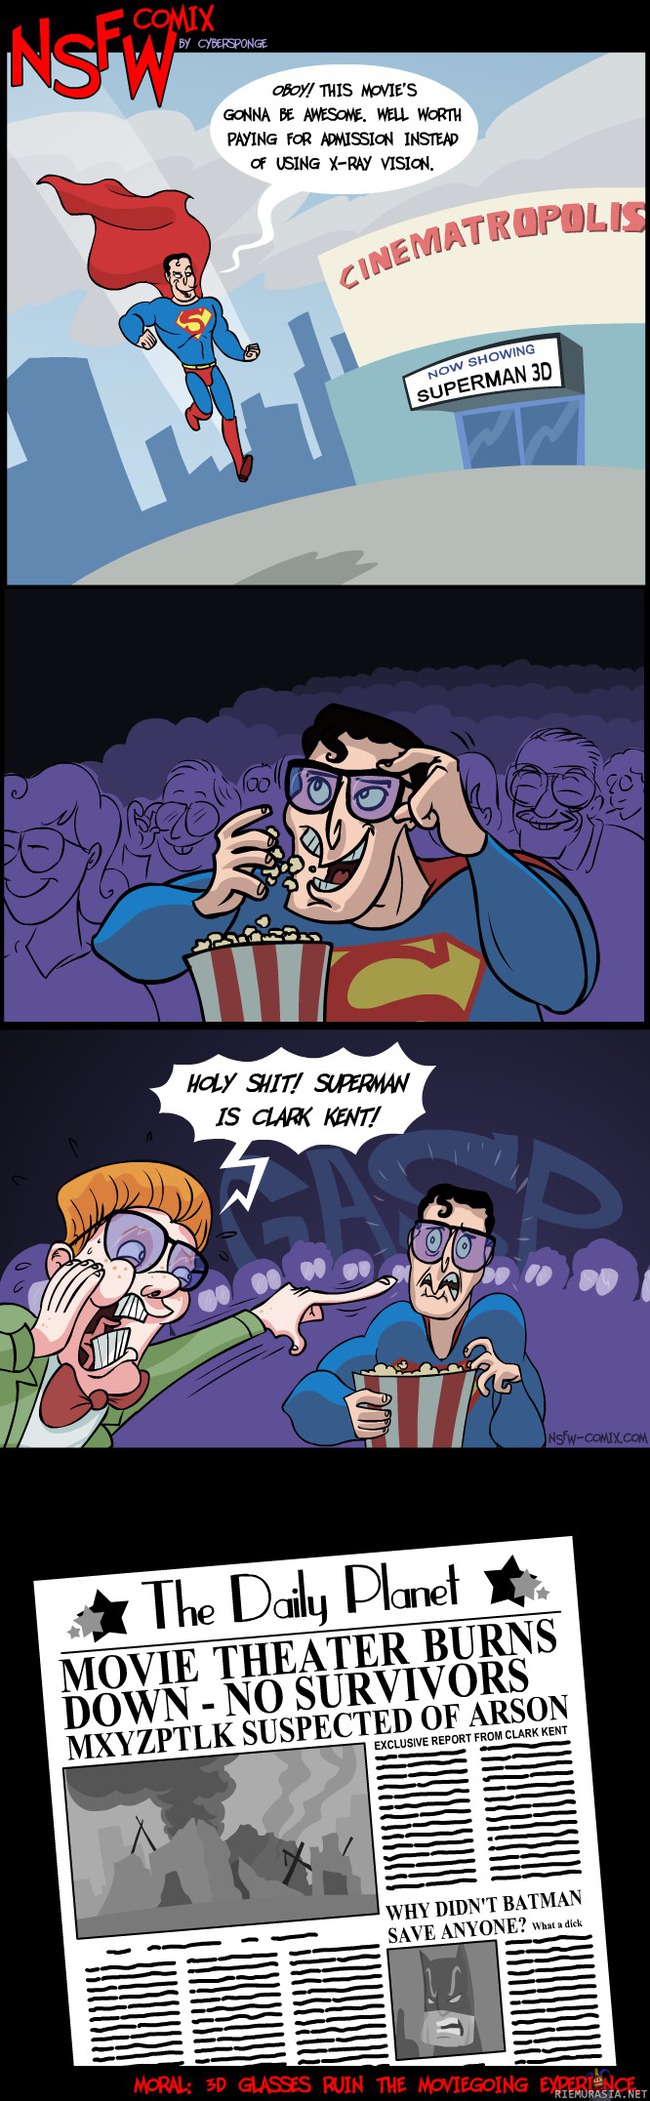 Supermies leffoissa